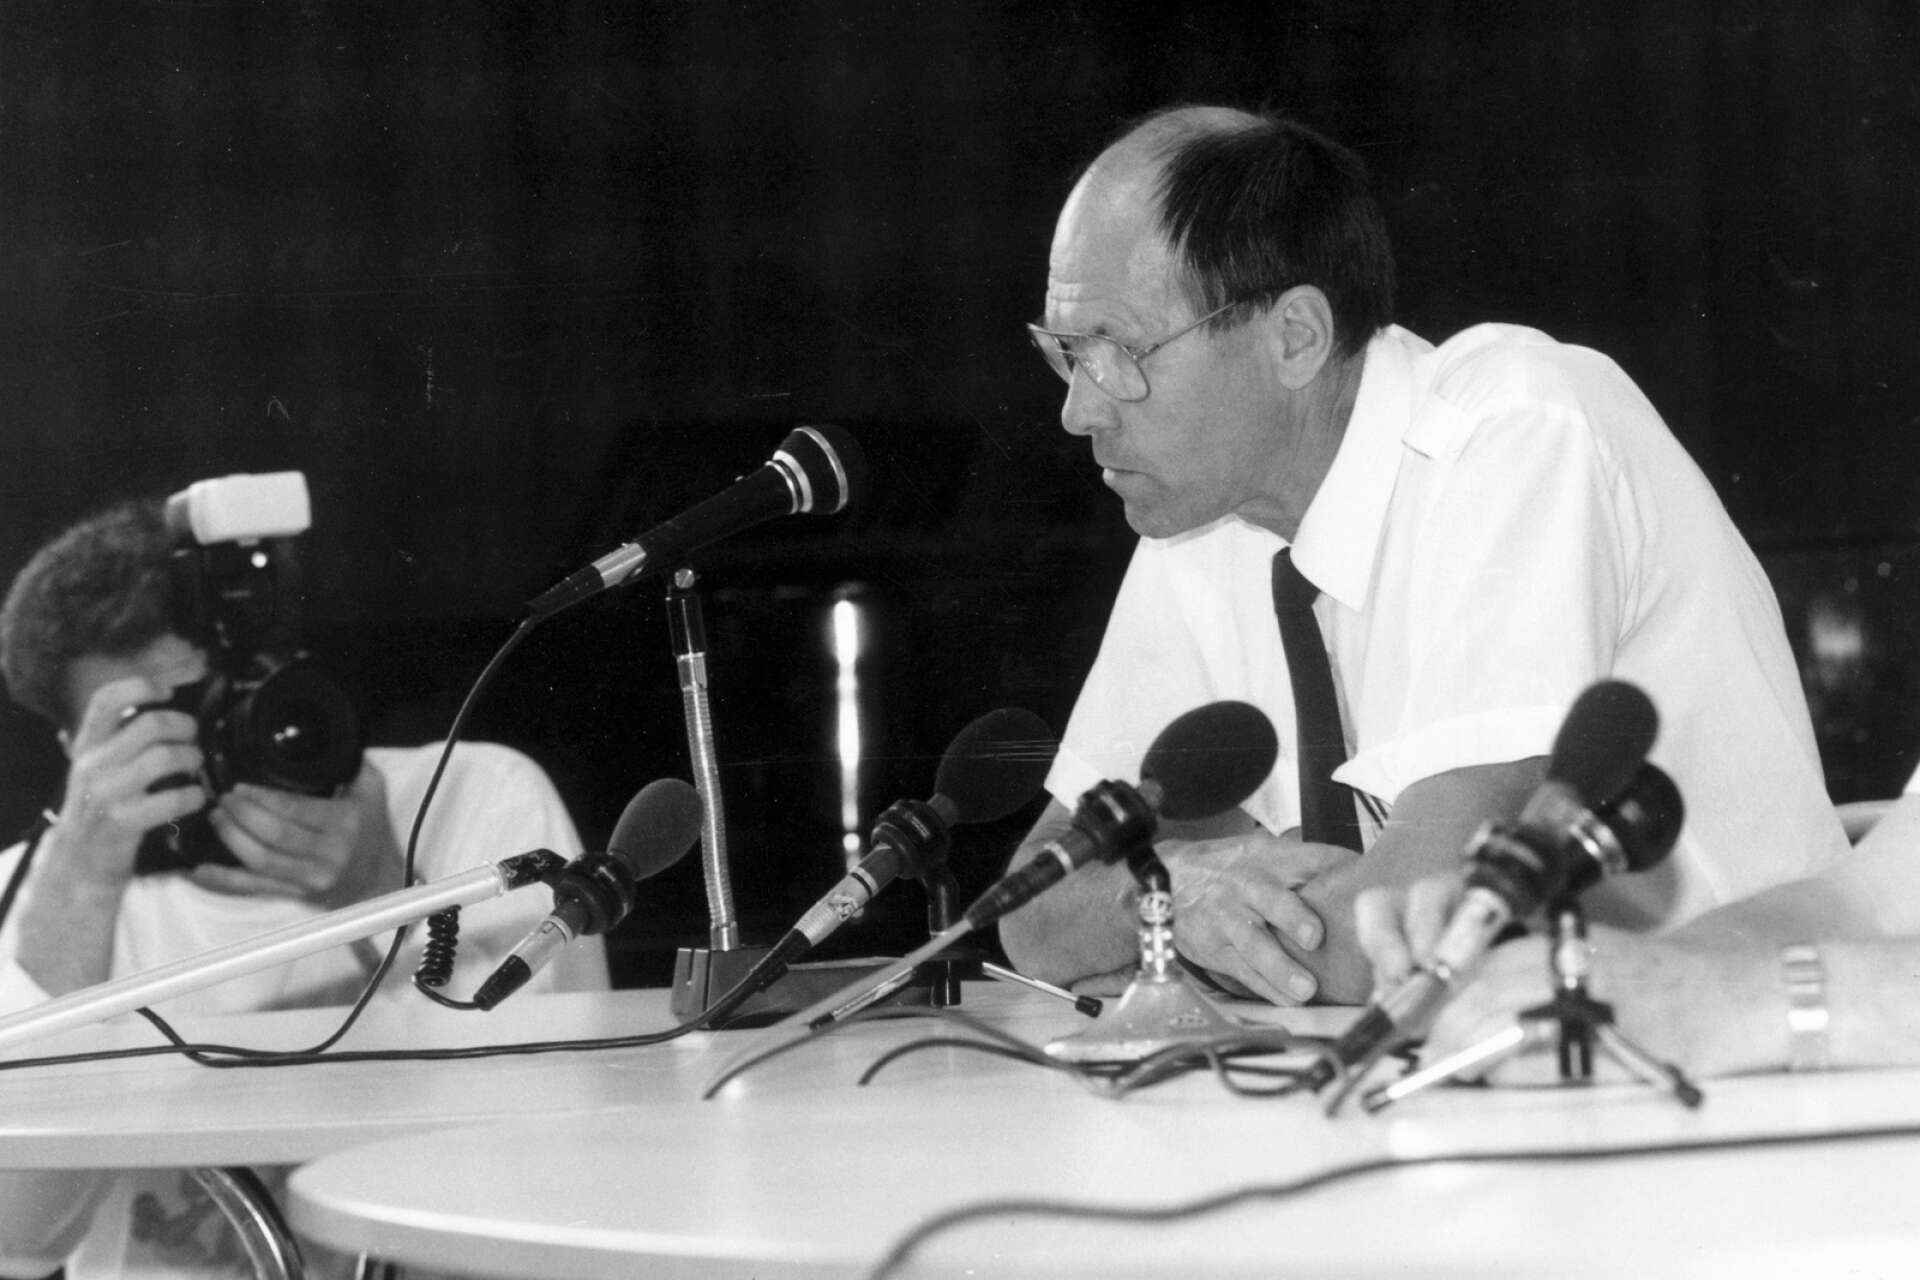 Förre kriminalkommissarien Karl-Erik Kvist ledde de första åren spaningarna efter den försvunna Helena. Försvinnandet uppmärksammades massmedialt och bilden är från en presskonferens i juli 1992.